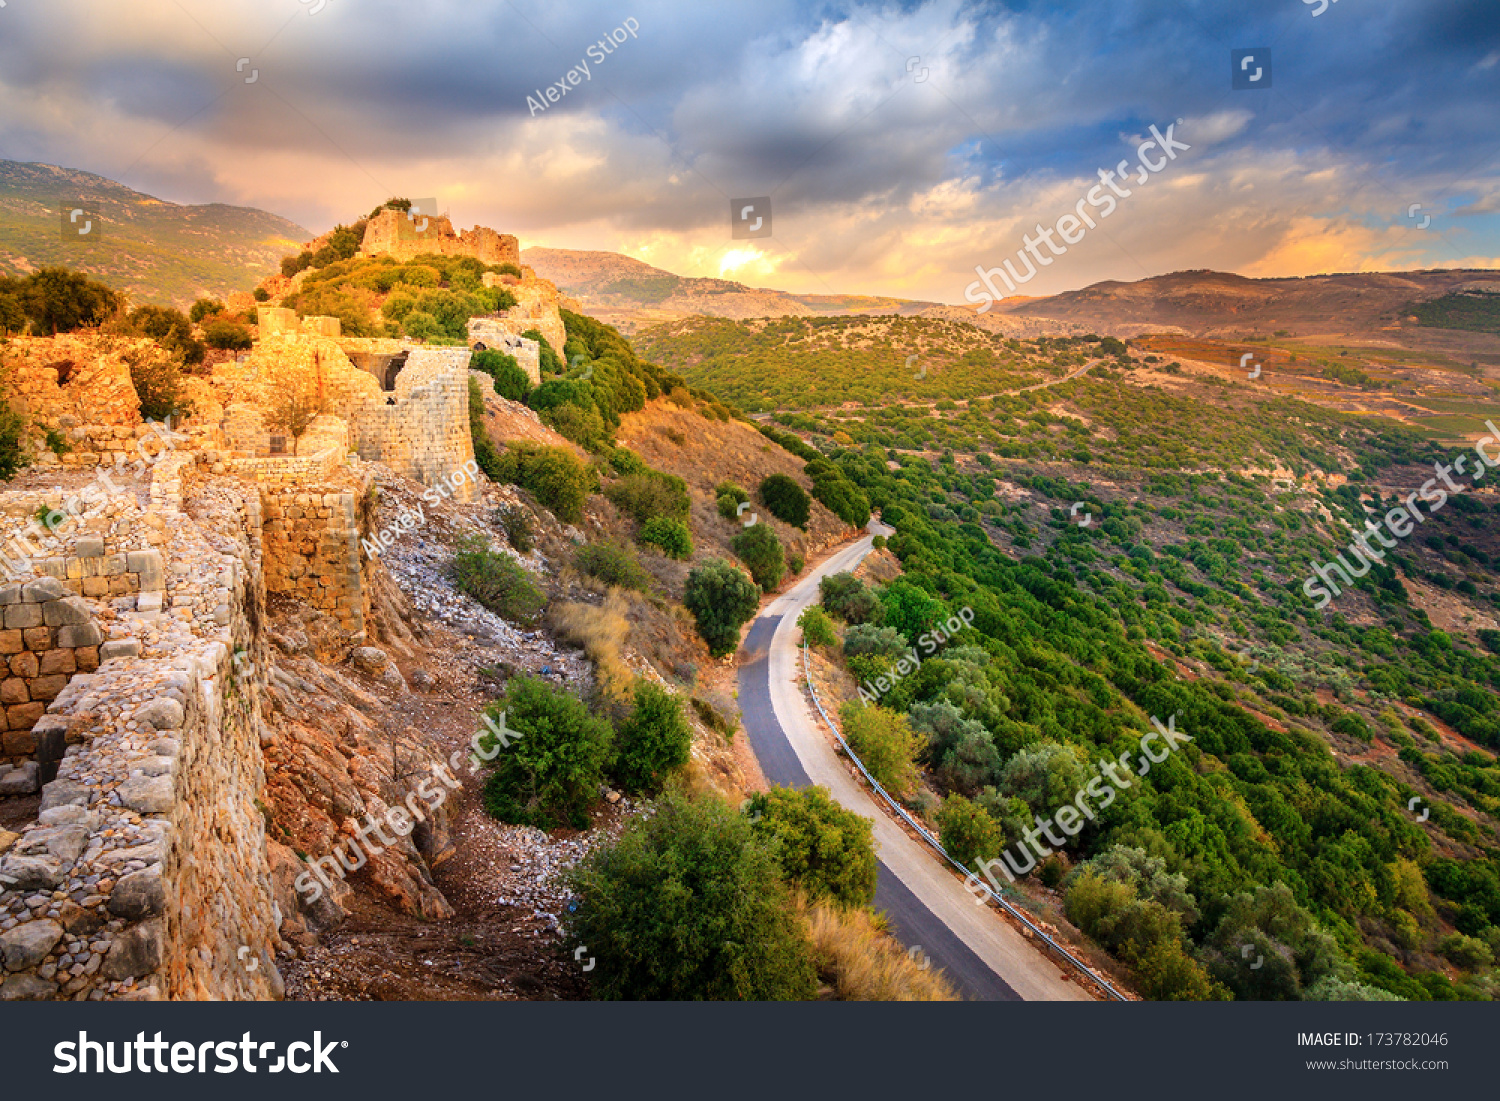 Castle Nimrod in Israel #173782046